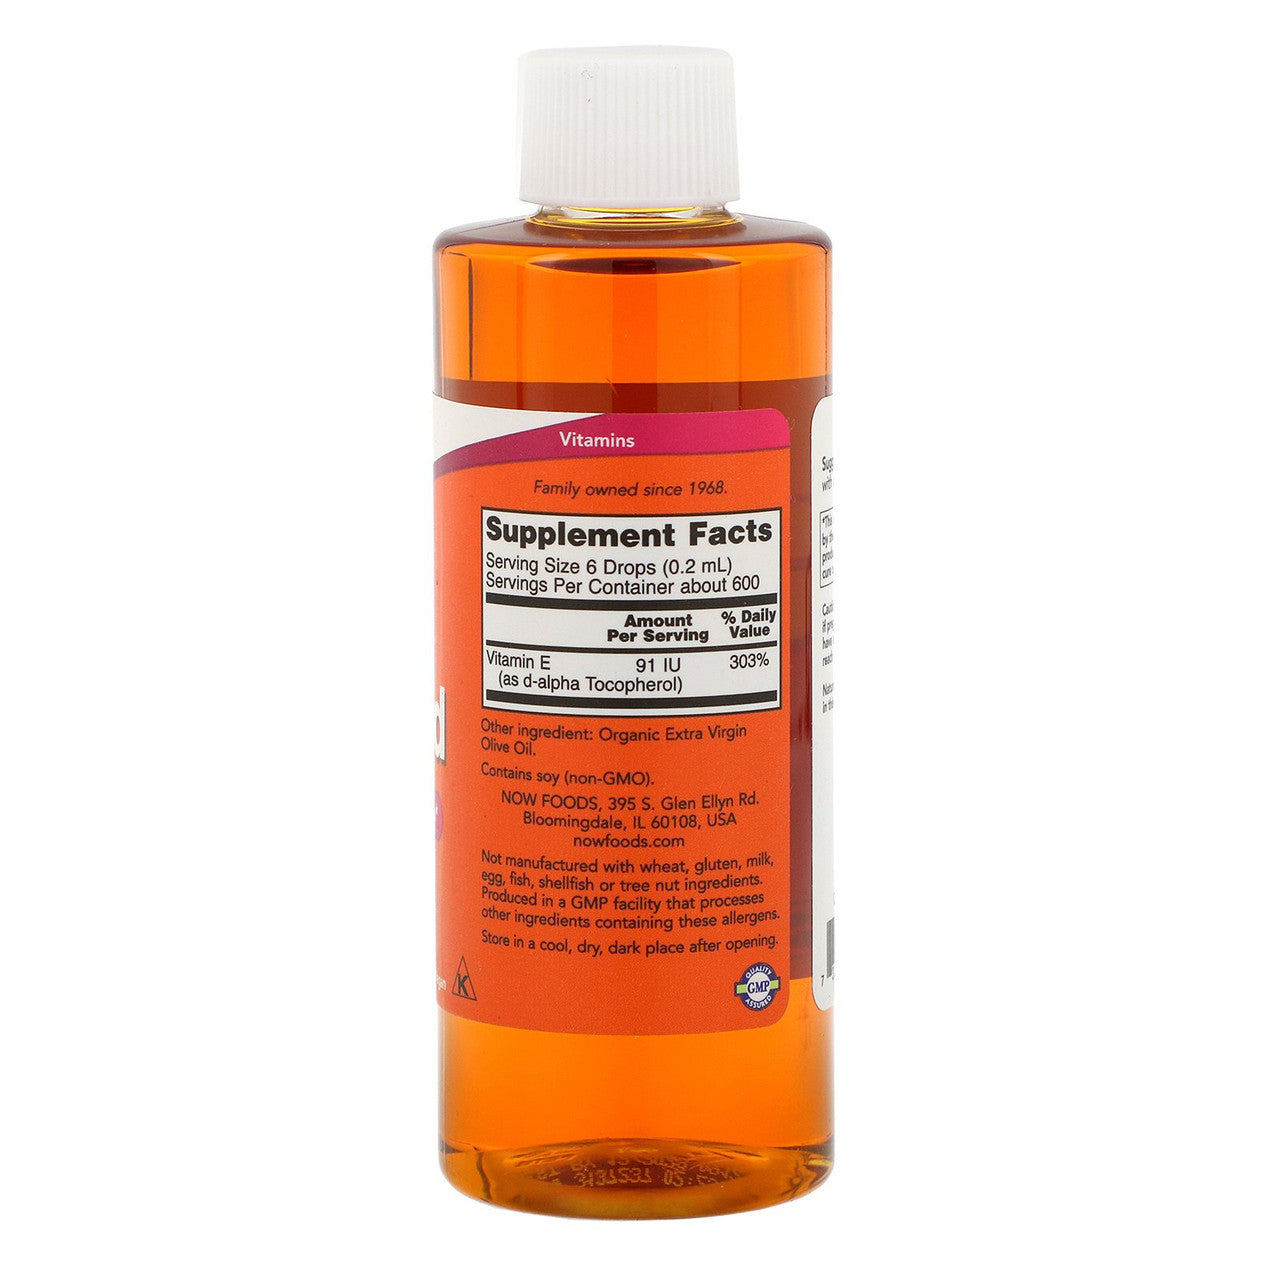 Now E Liquid 54,600 IU Liquid Supplement Facts Label